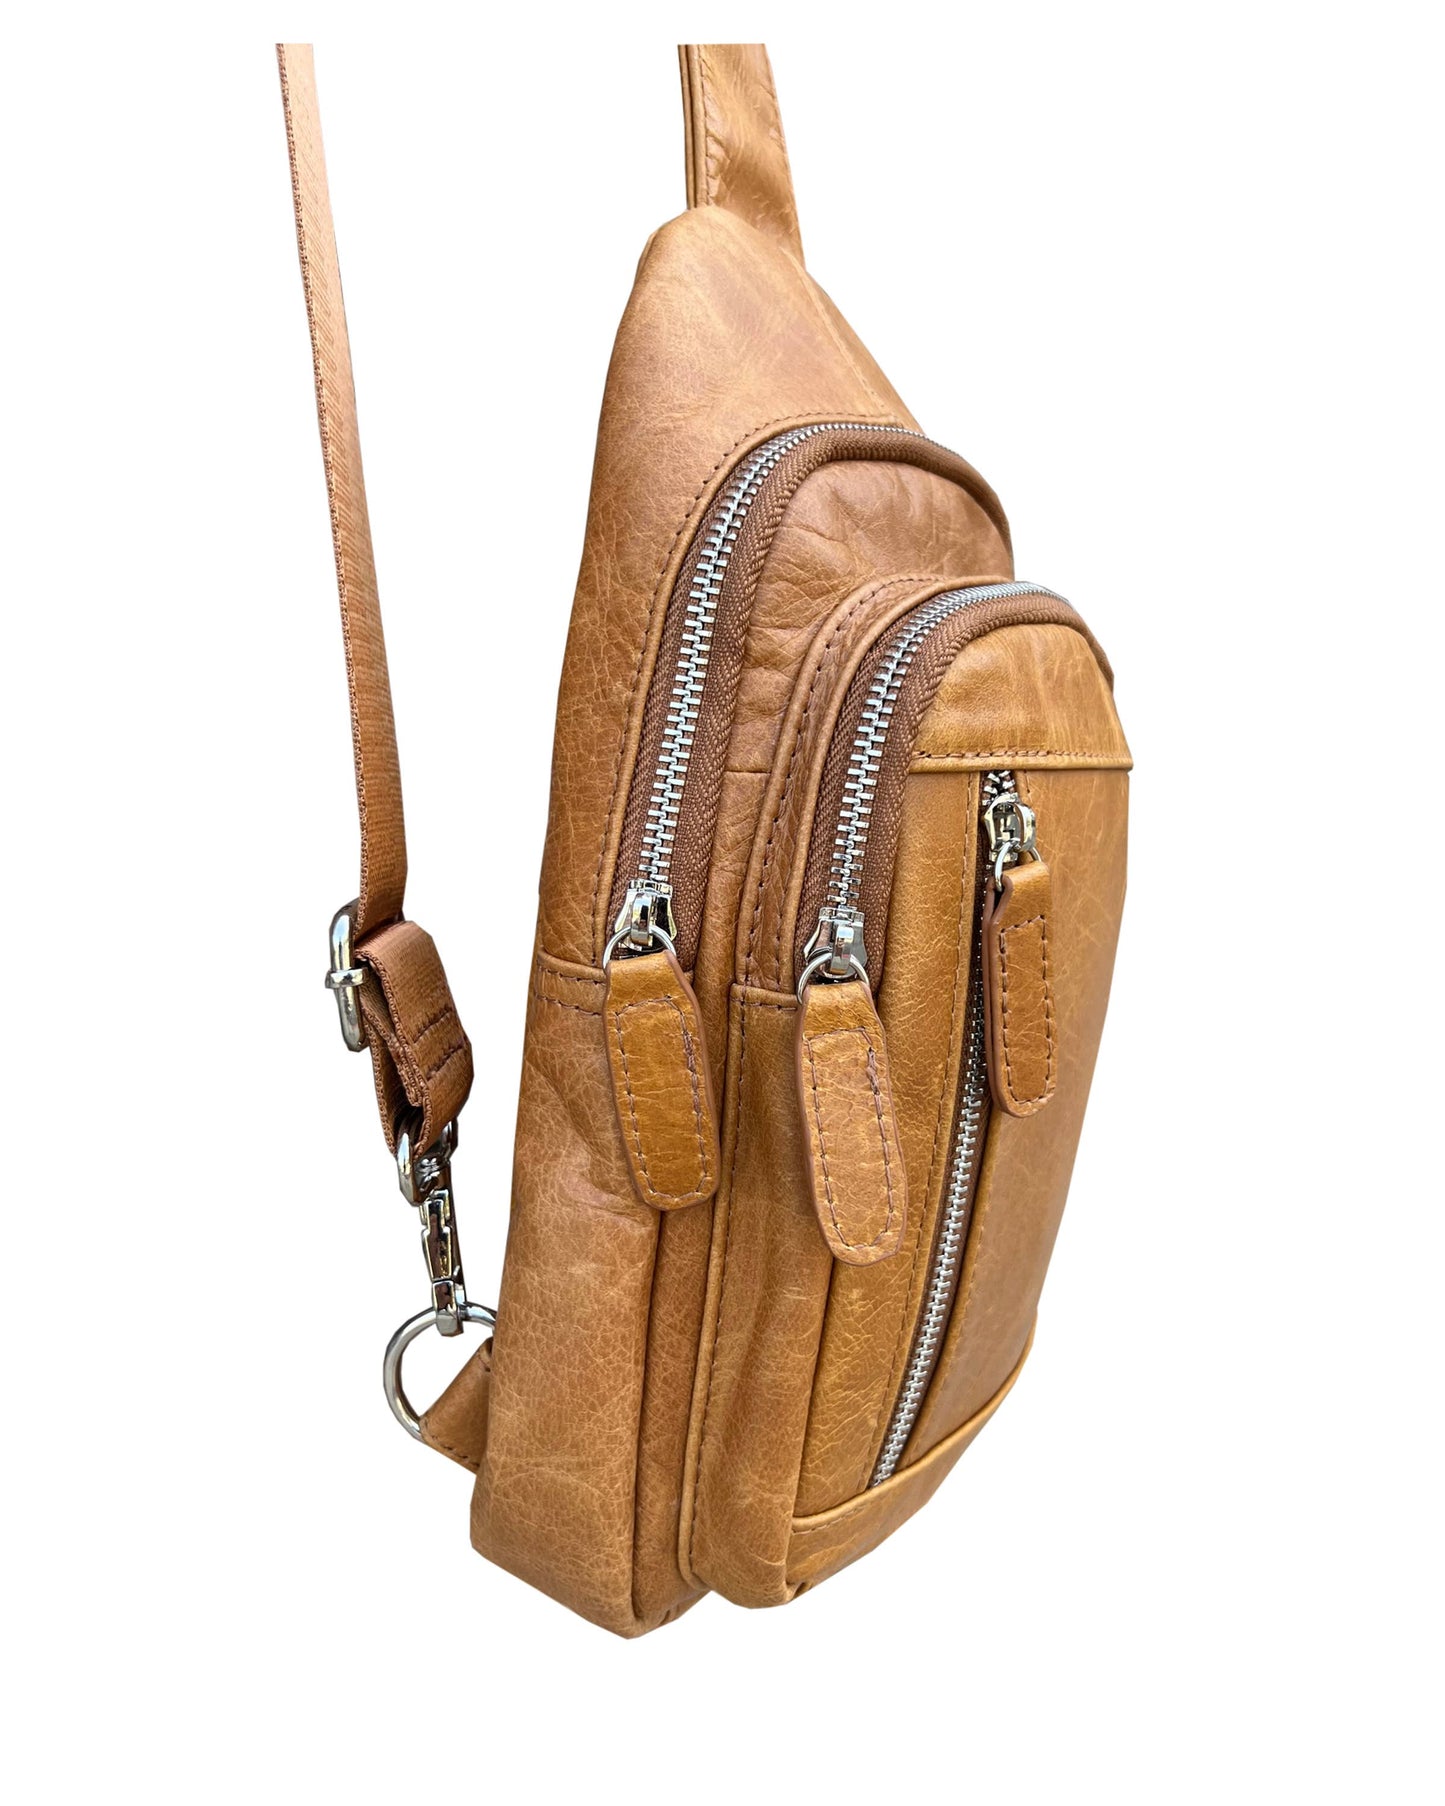 Leather Sling Bag / Backpack